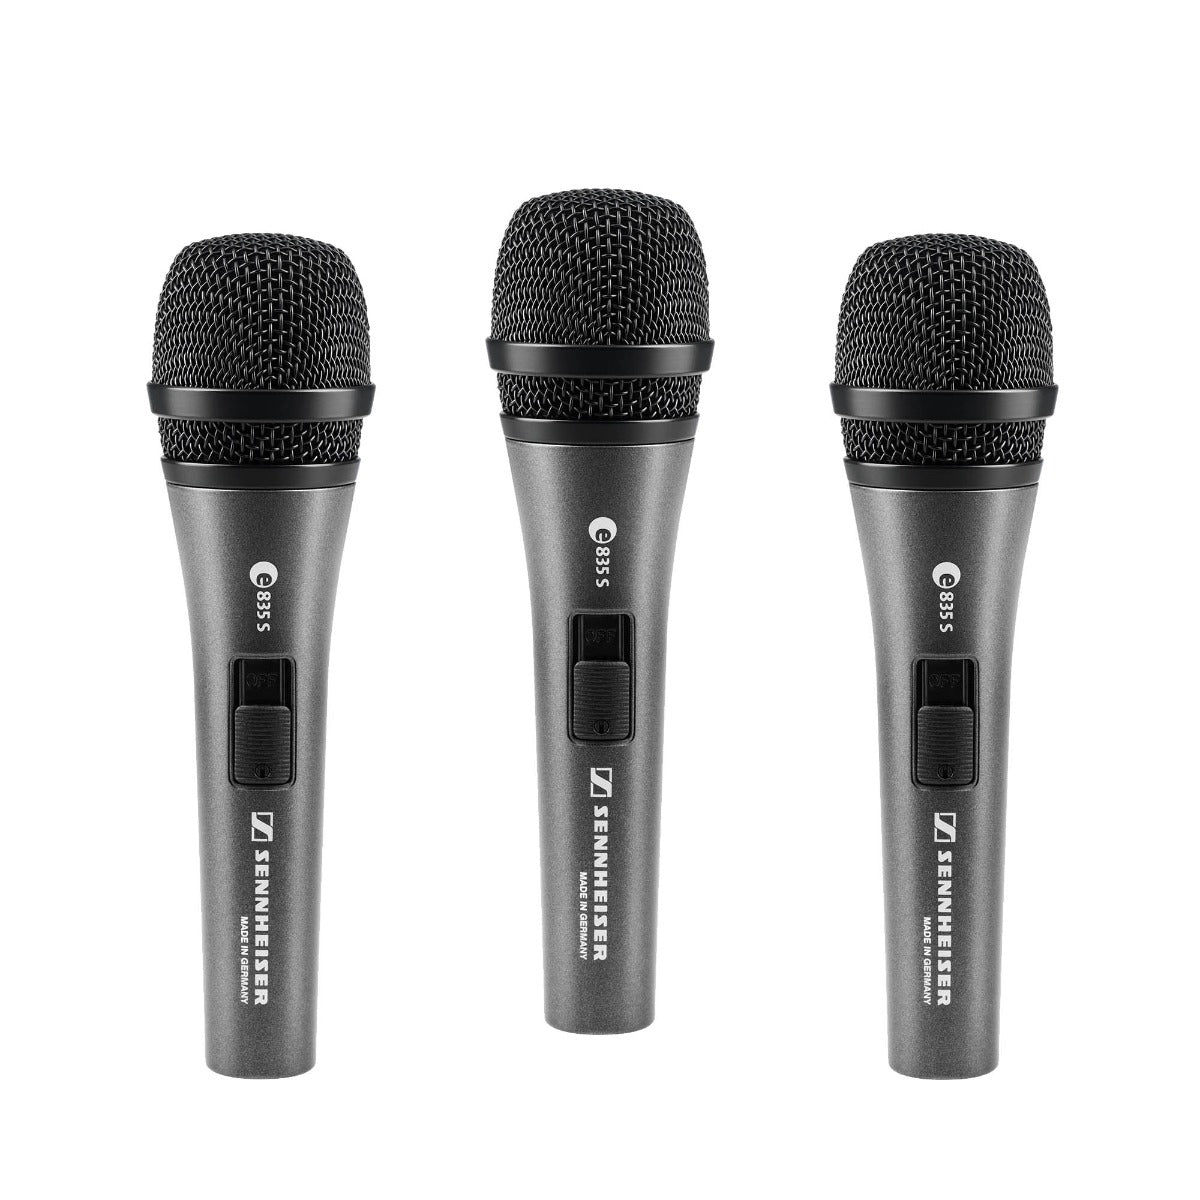 Sennheiser e 835-S Dynamic Vocal Microphone - 3 Pack